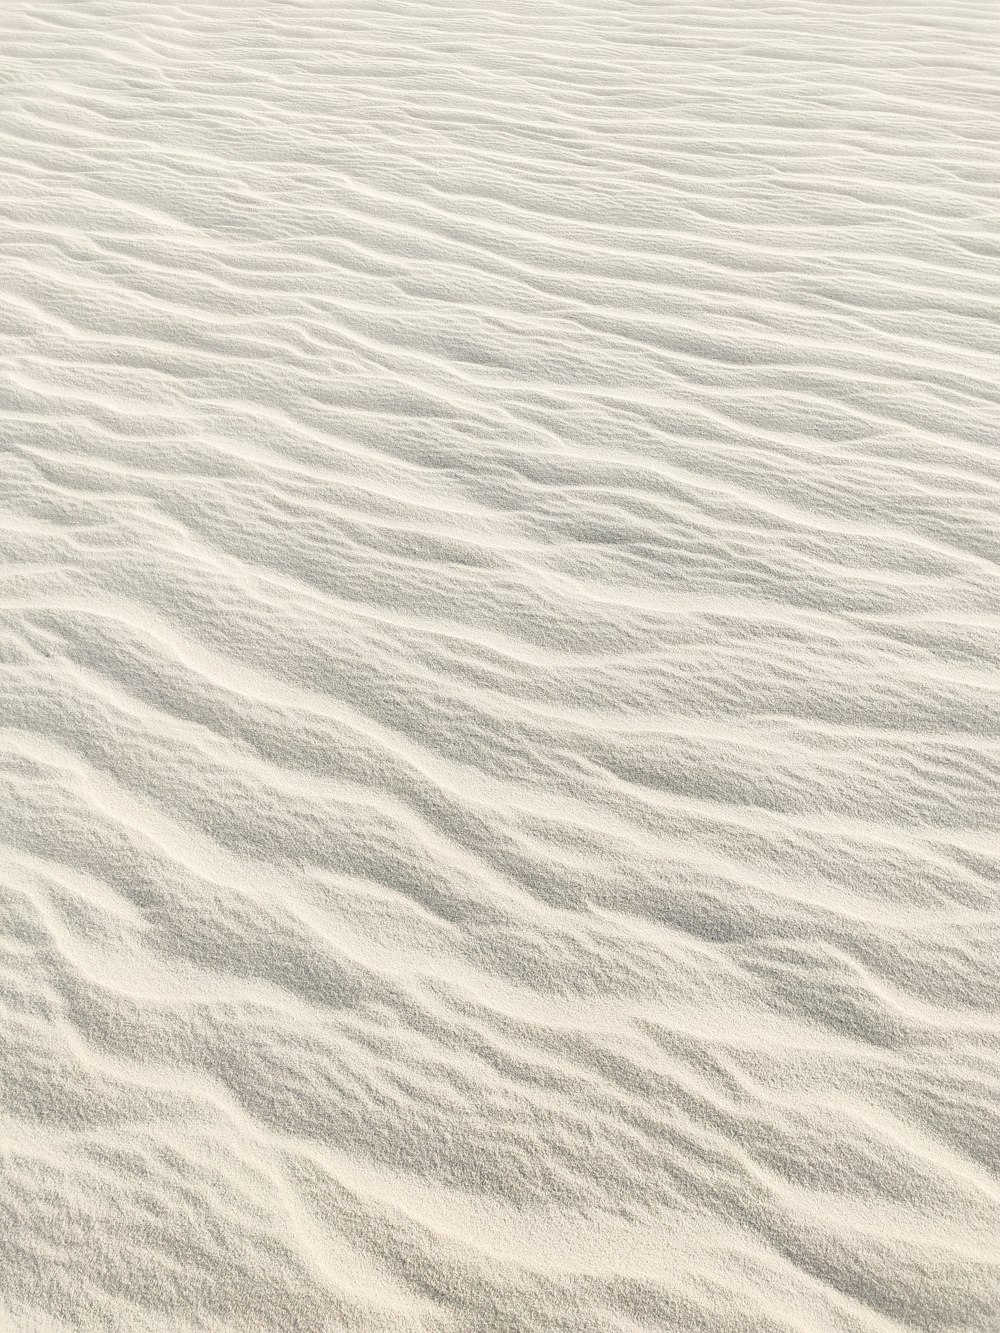 낮에는 물이 있는 하얀 모래